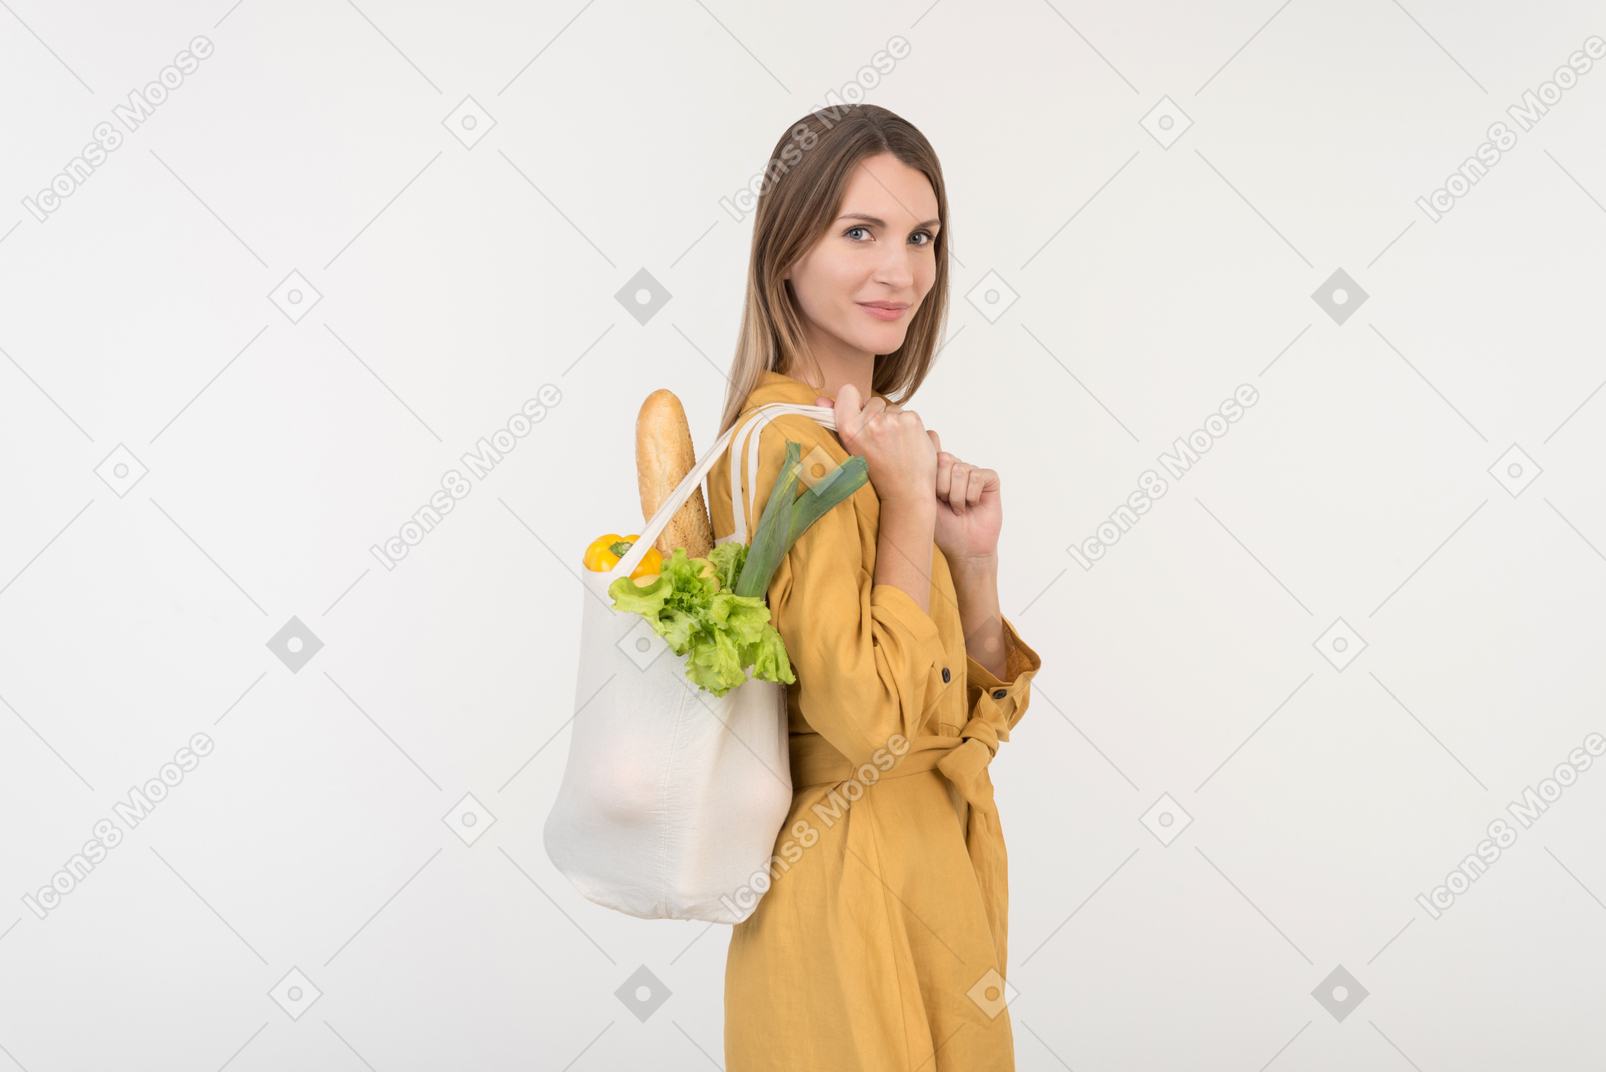 Junge frau, die einkaufstasche mit gemüse hält und unten schaut